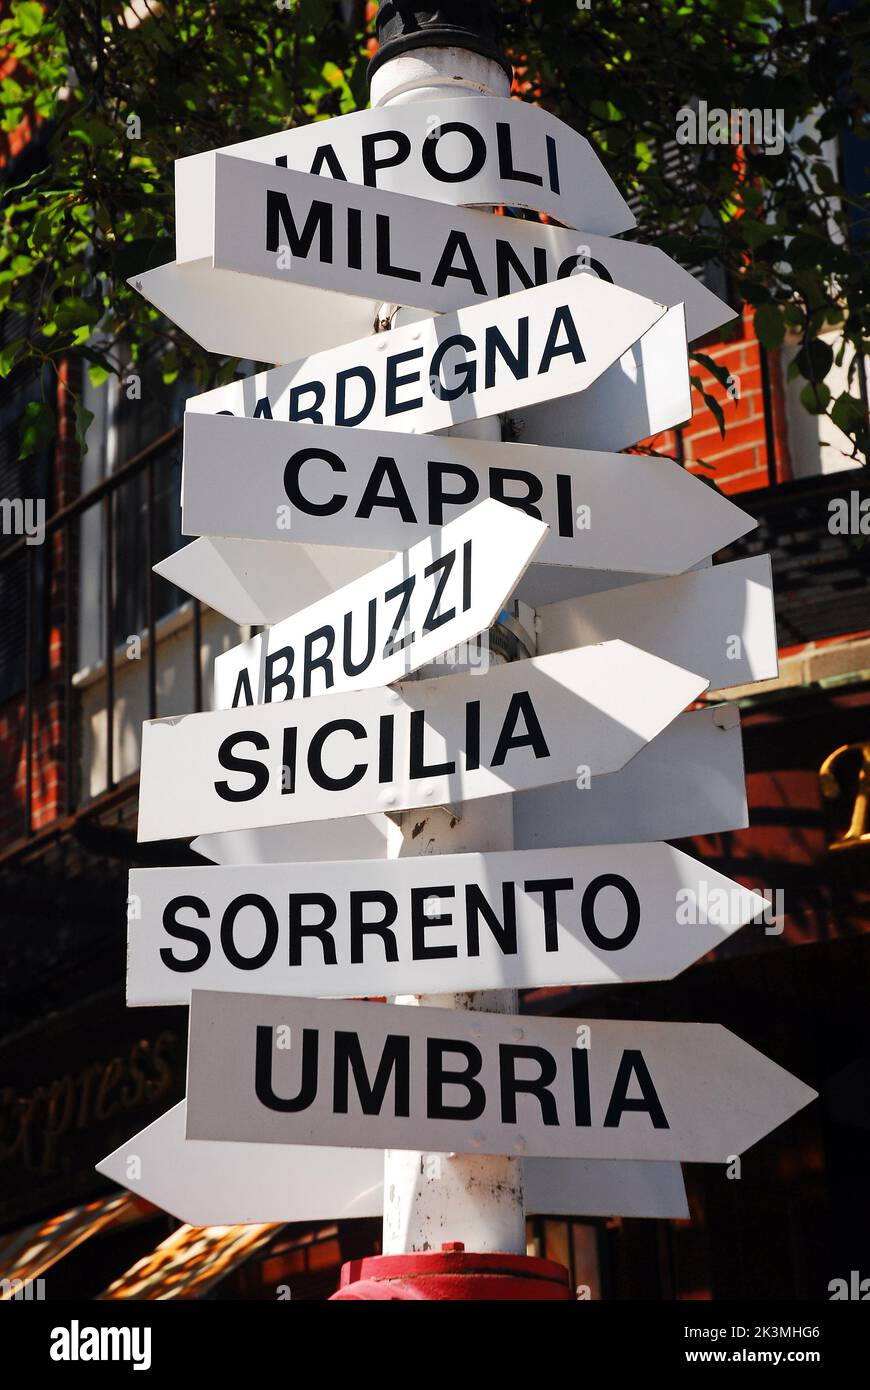 Un panneau dans le quartier traditionnel italien de l'extrémité nord de Boston montre un panneau indiquant la direction de plusieurs villes en Italie Banque D'Images